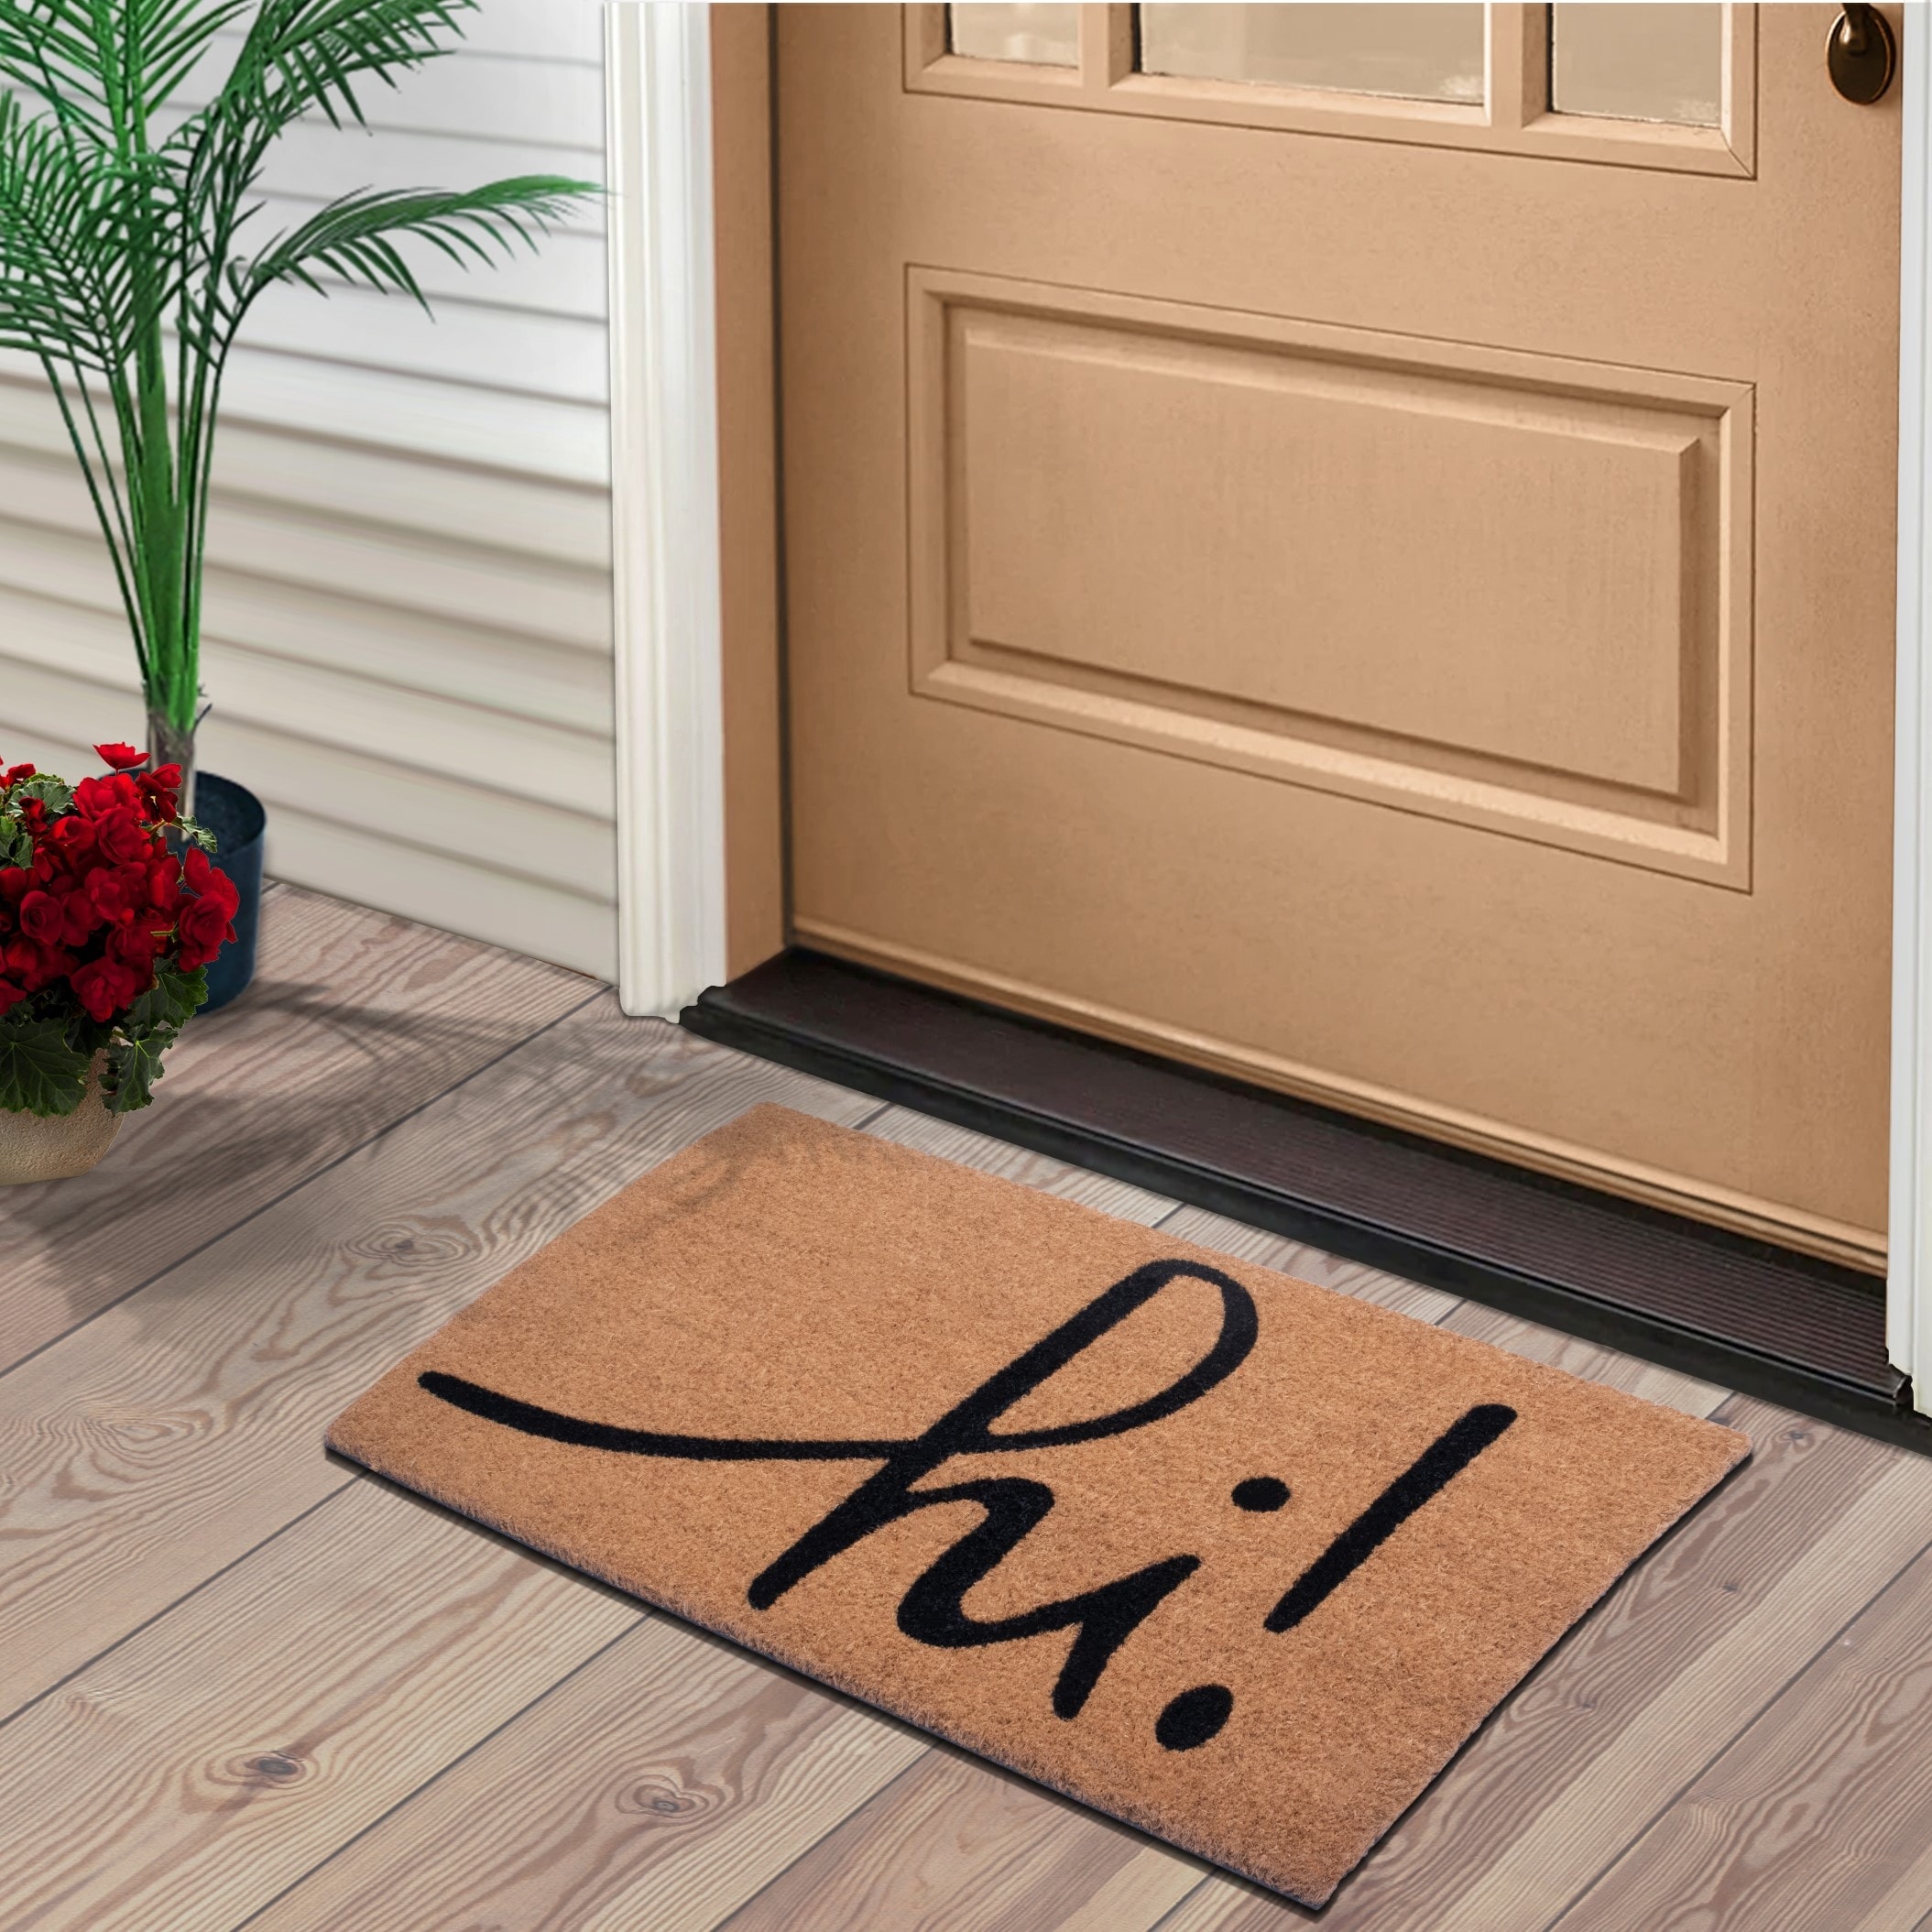 Mascot Hardware Coco Coir Home Entrance Door Mat 28 x 18-in. Home Sweet Home Welcome Mat - Heavy Duty Doormat for Outdoor & Indoor Use Beige